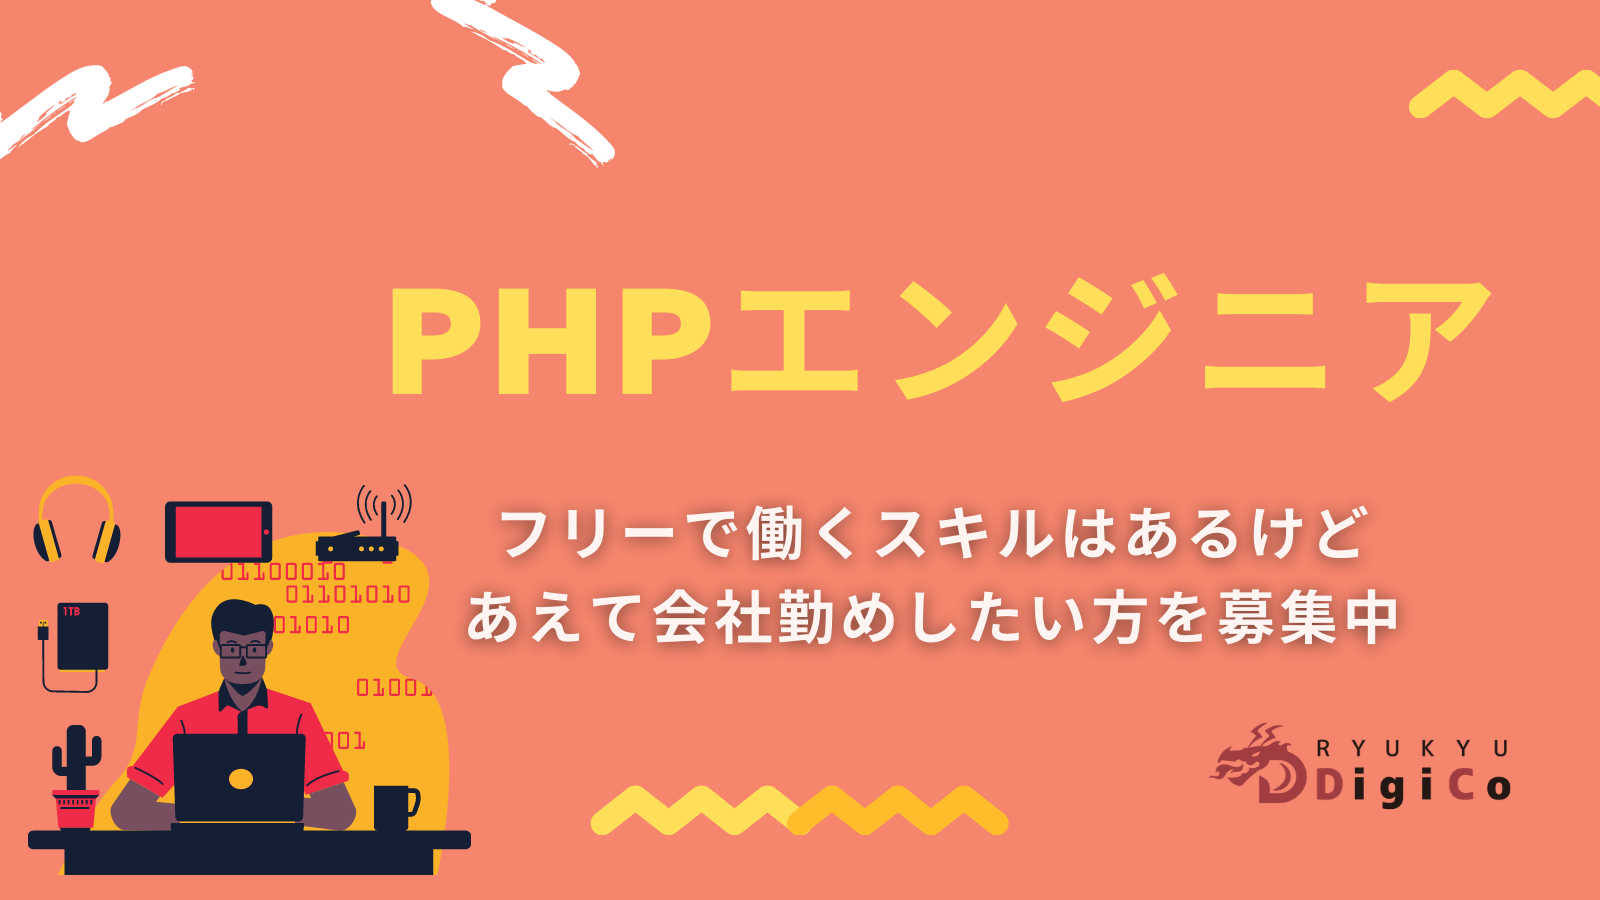 【PHPエンジニア】フリーで働くスキルはあるけど、あえて会社勤めしたい方を募集しています。